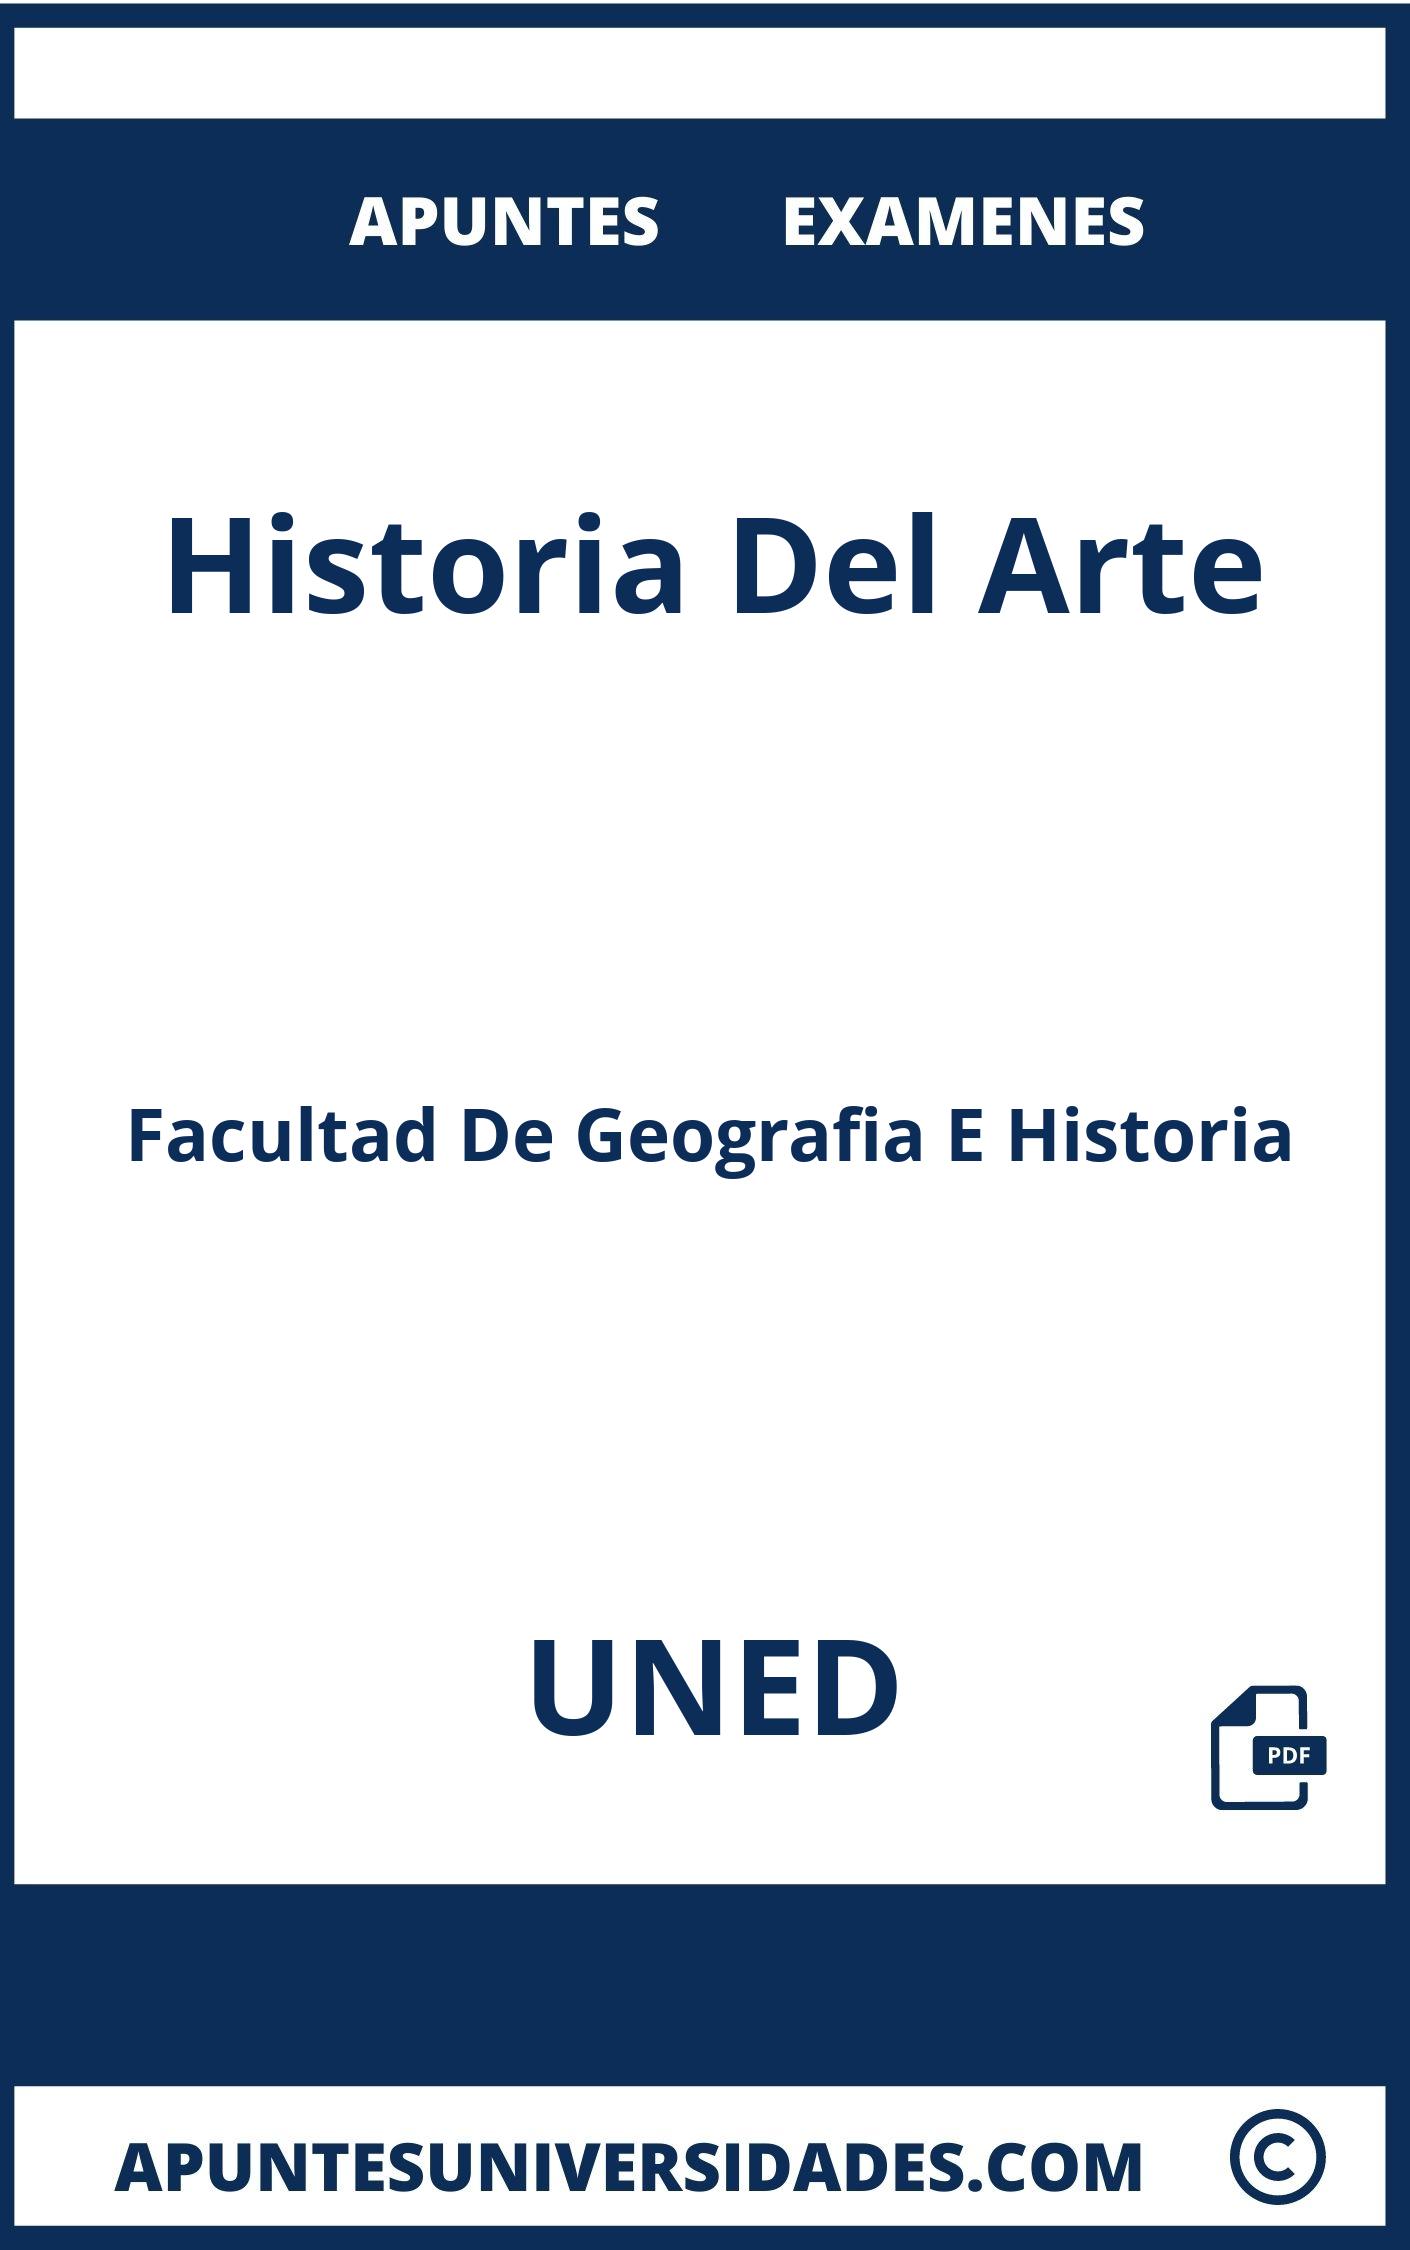 Examenes Historia Del Arte UNED y Apuntes